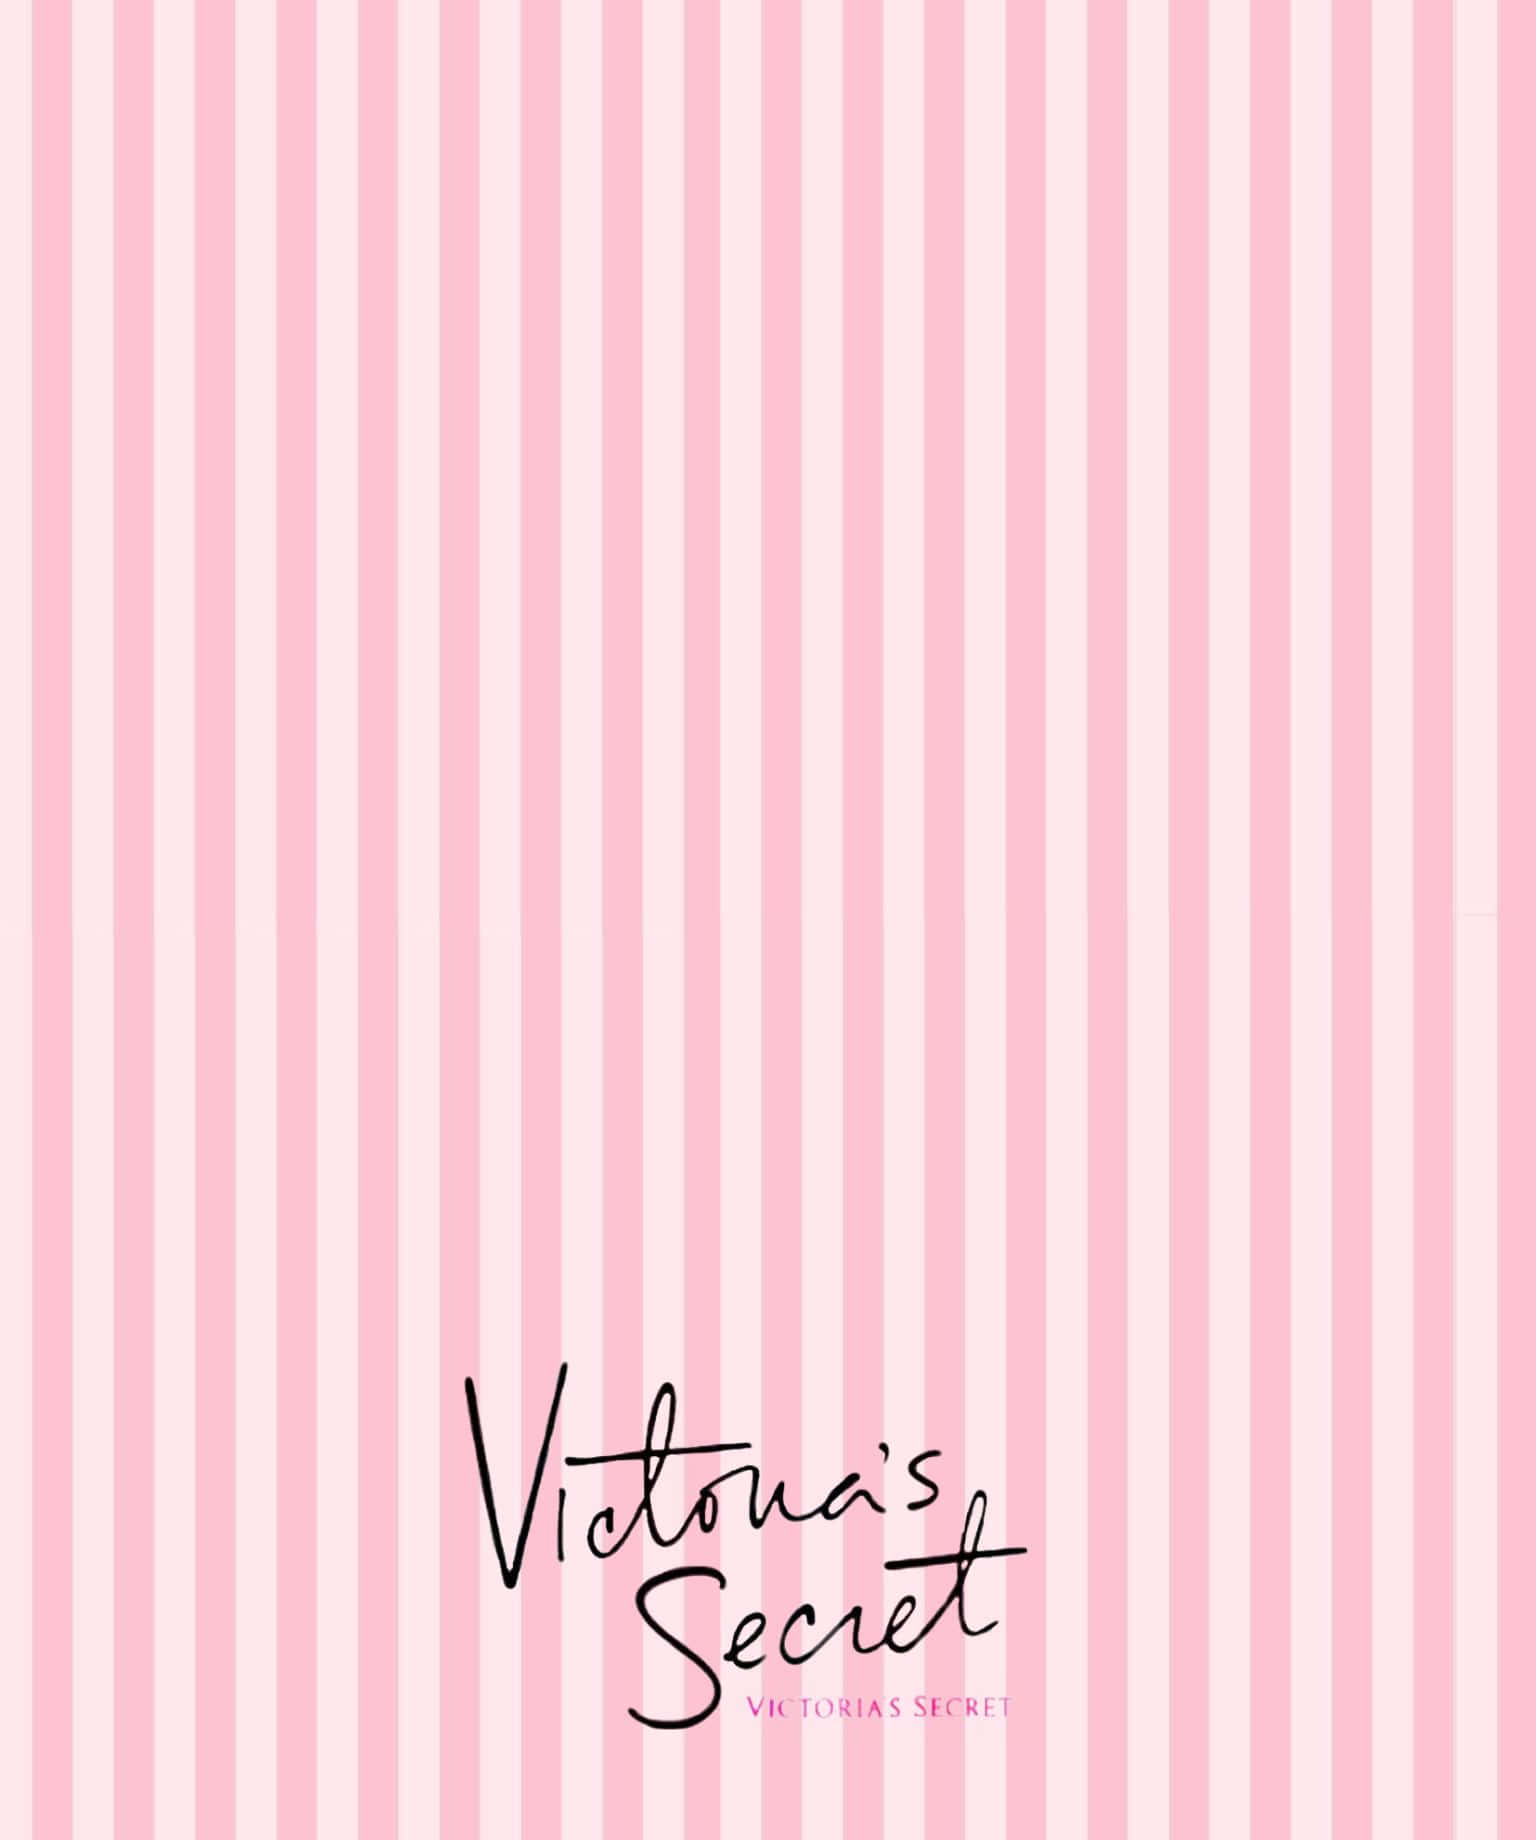 Victoria'ssecret 1536 X 1840 Bakgrund